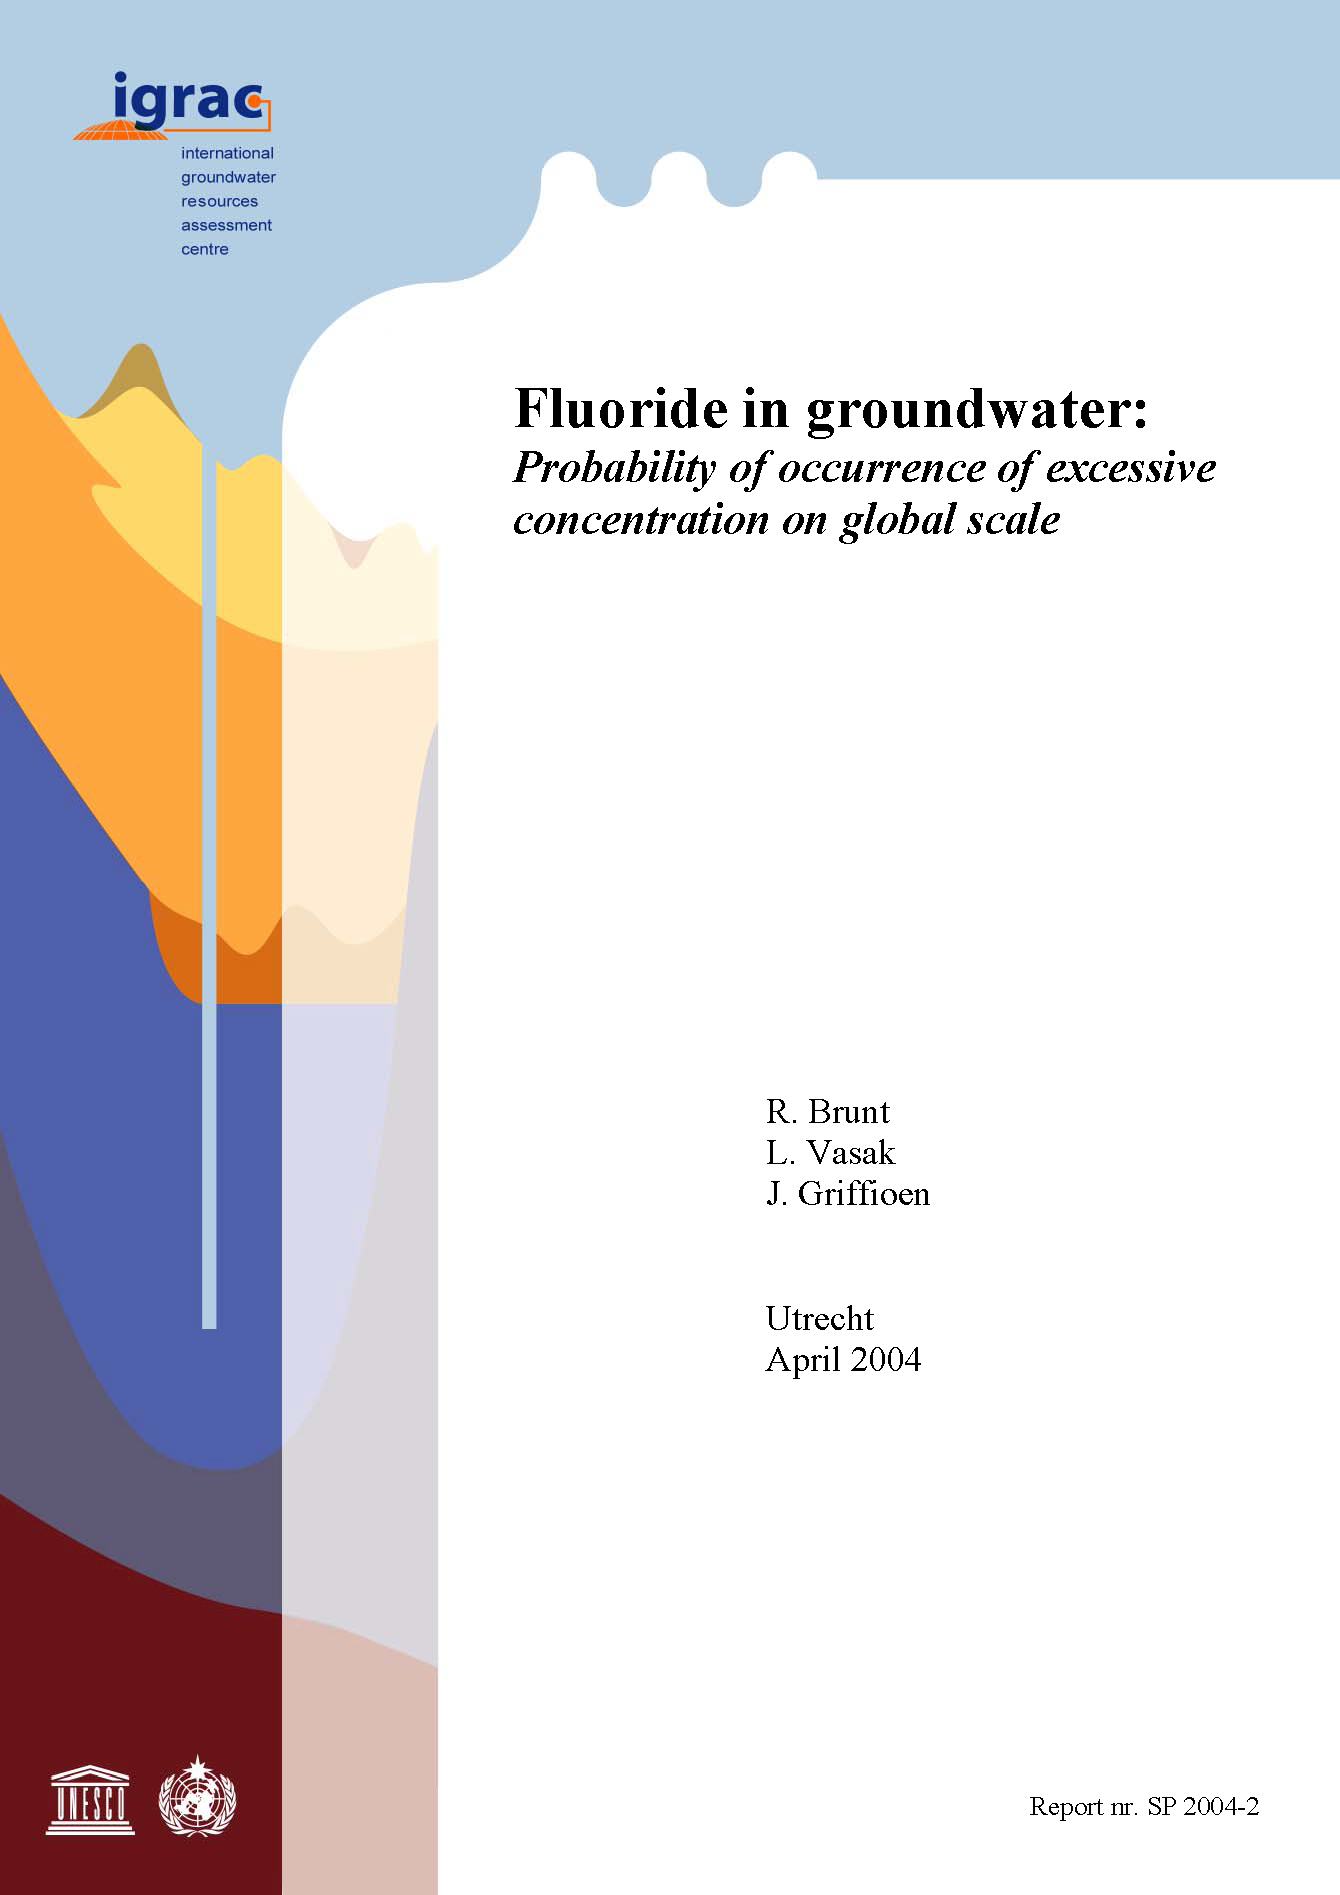 Page de couverture de Fluorure dans les eaux souterraines : probabilité d'occurrence d'une concentration excessive à l'échelle mondiale